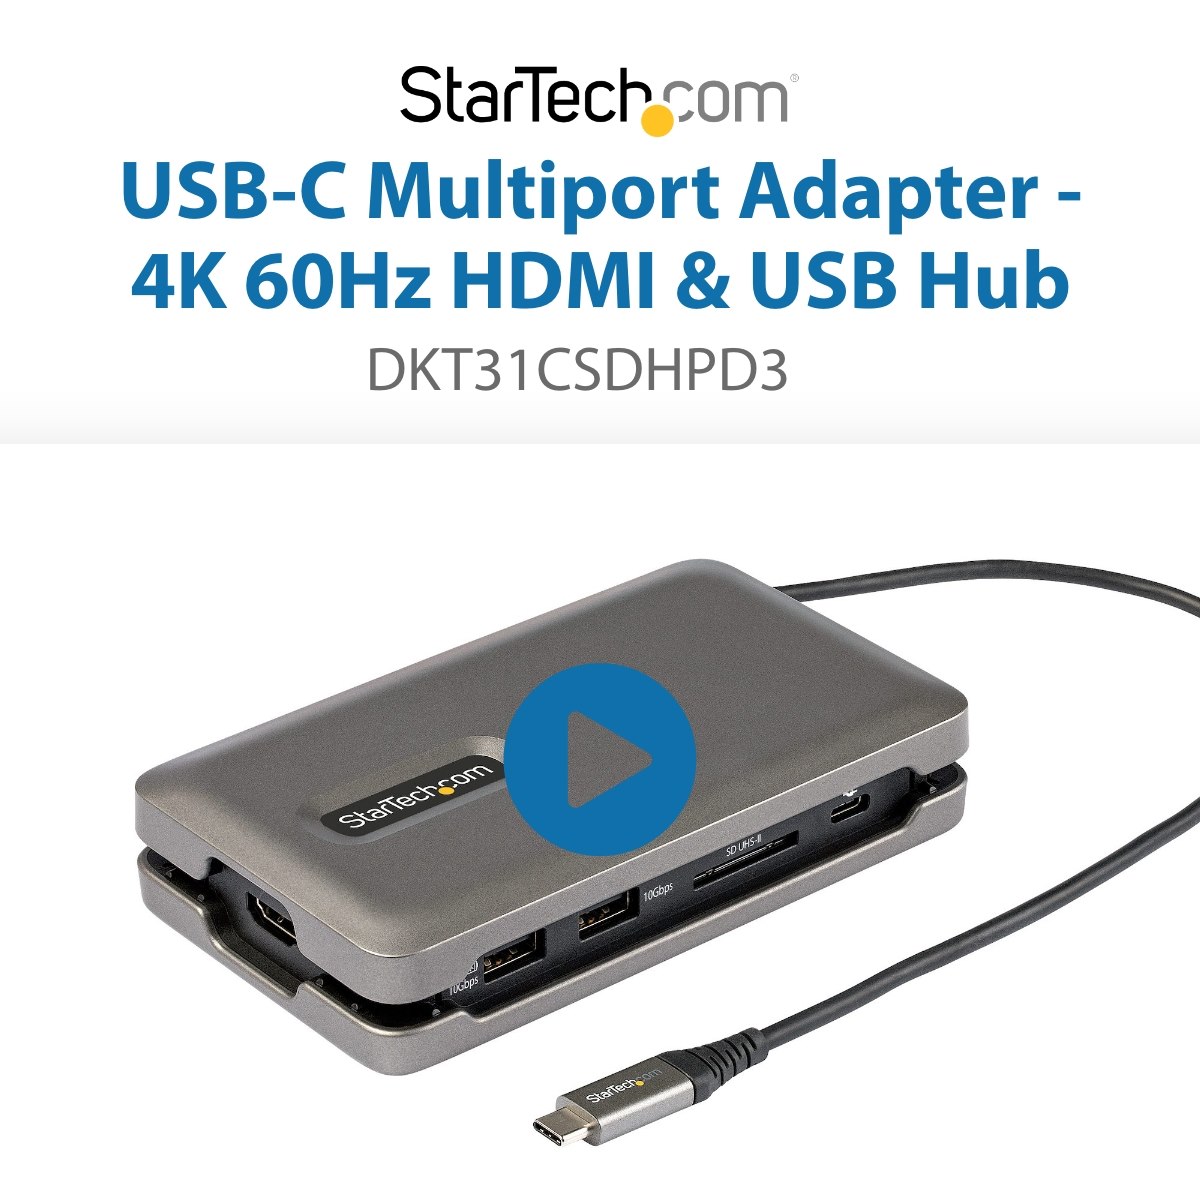 超熱 StarTech.com スタ−テックドットコム USB Type-C接続マルチ